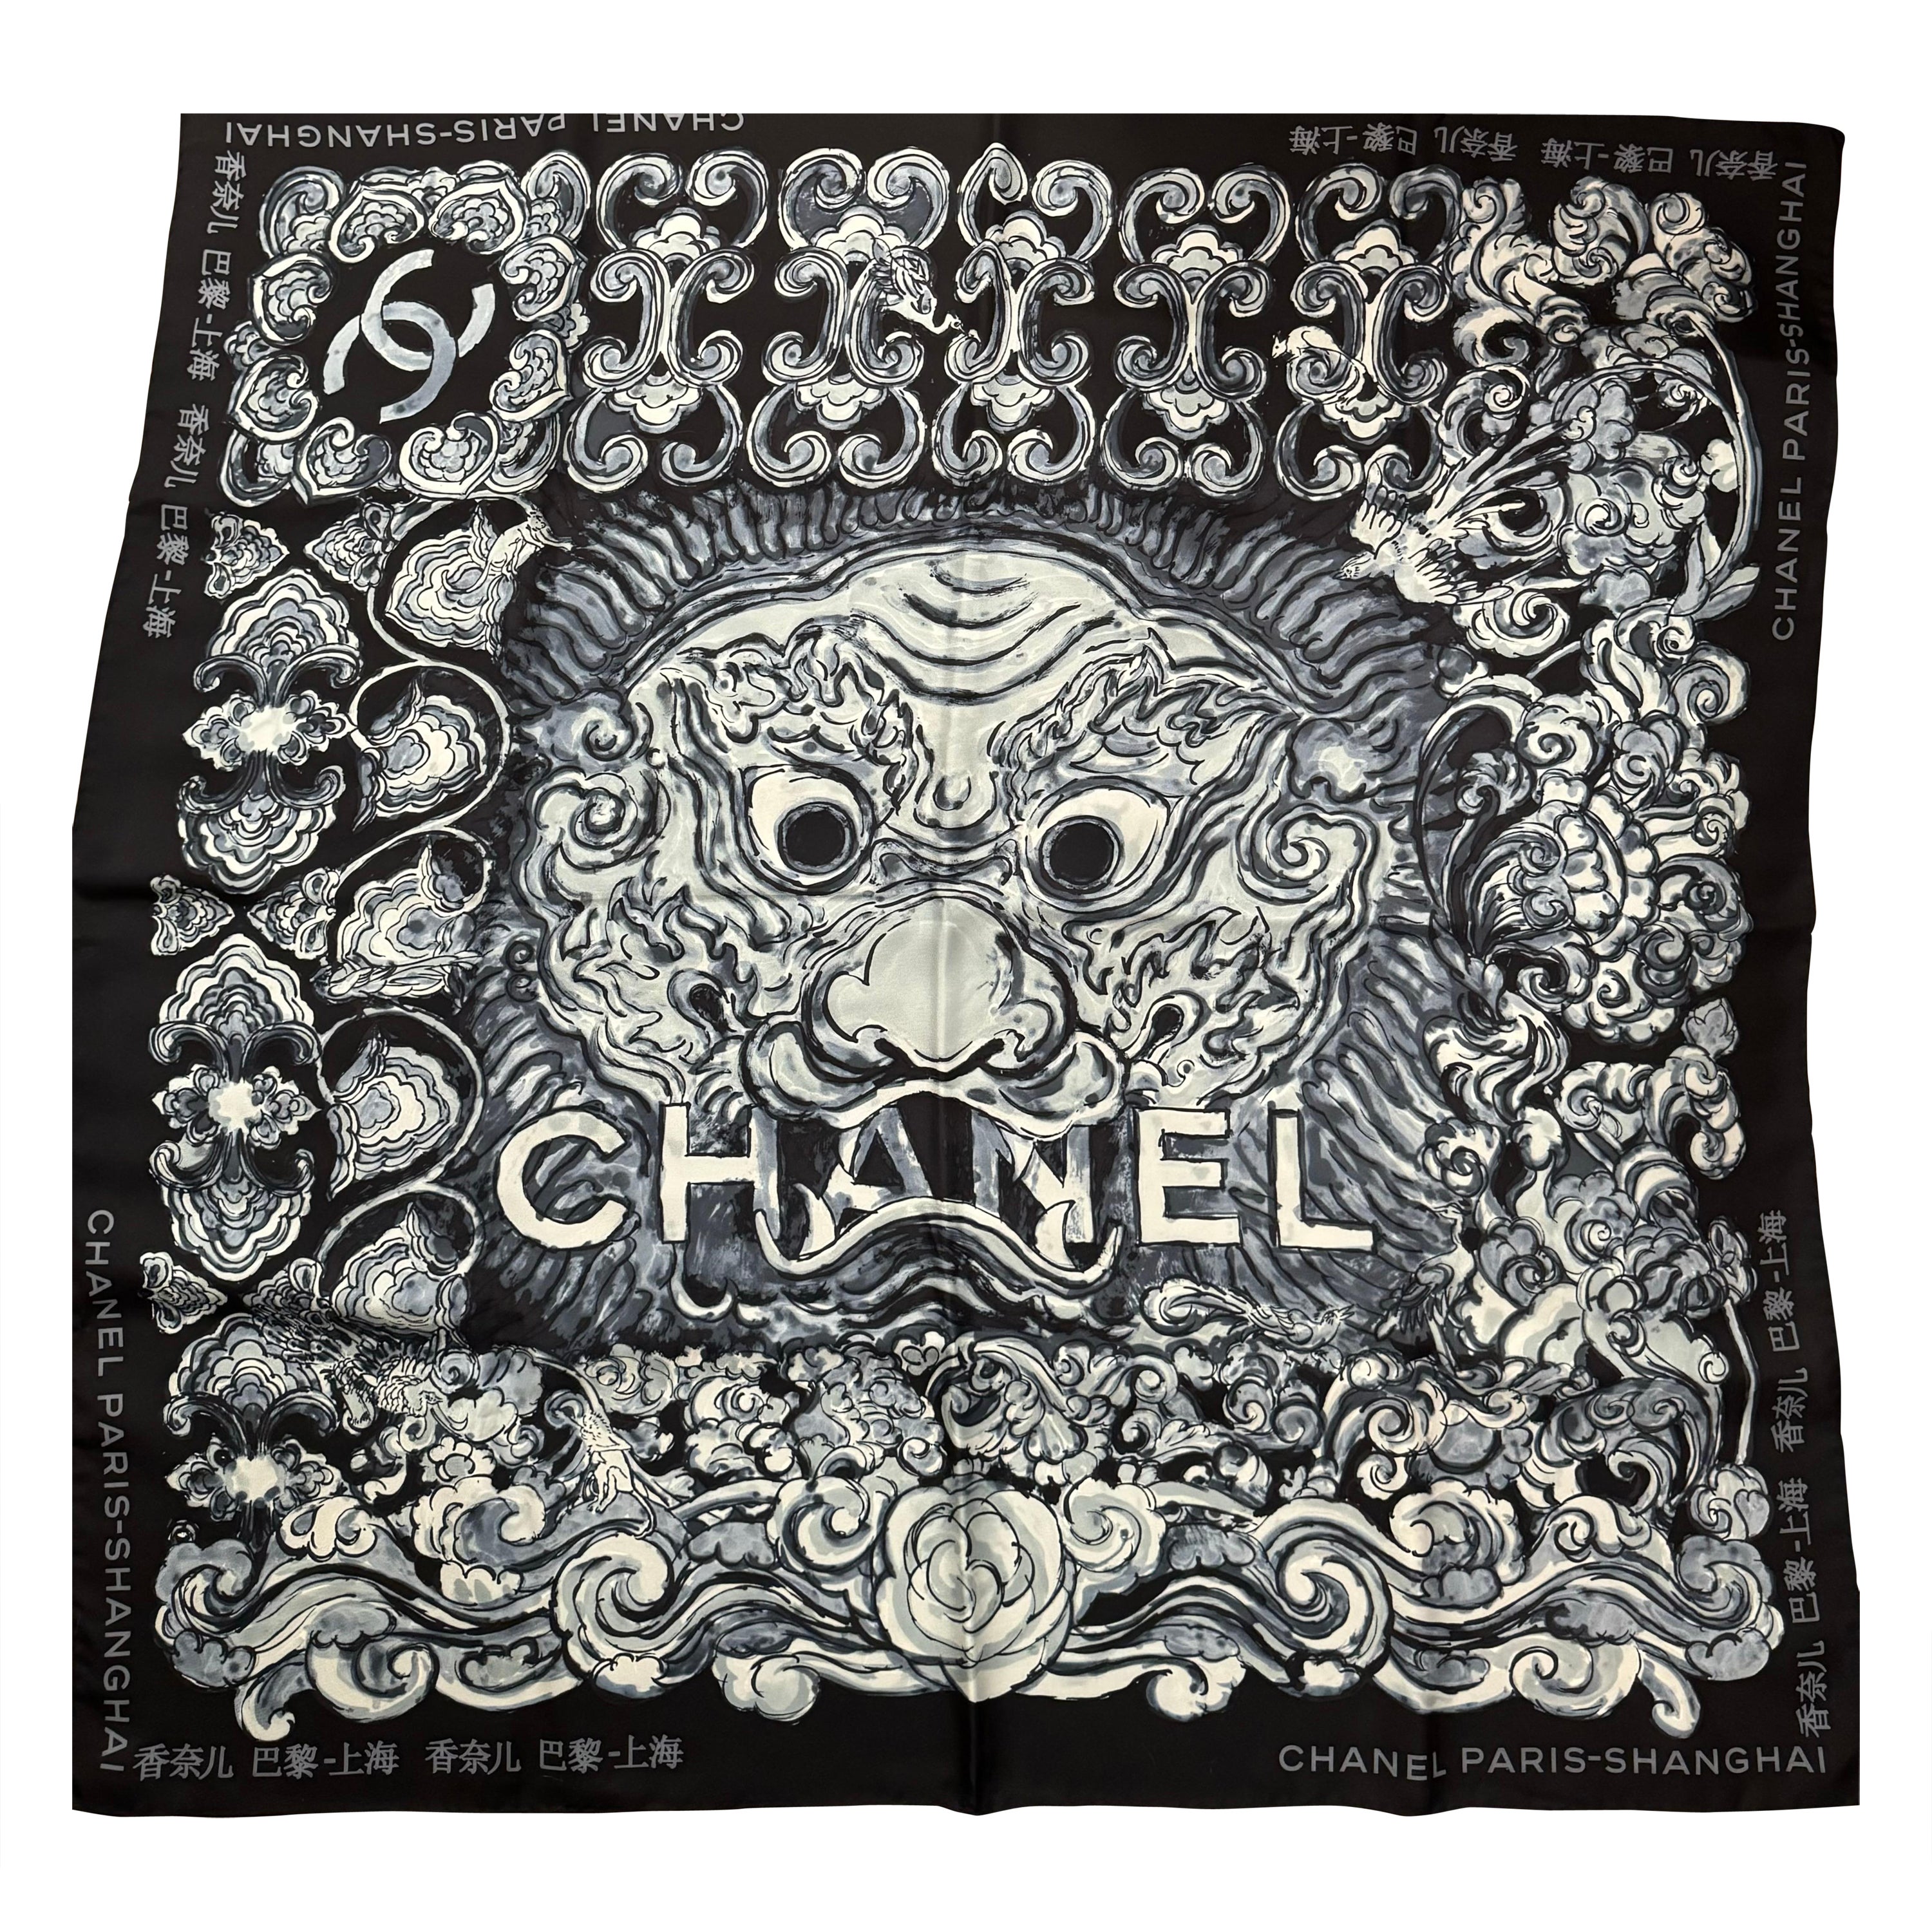 Seltener Chanel Paris Shanghai 2010 Seidenschal in limitierter Auflage  im Angebot